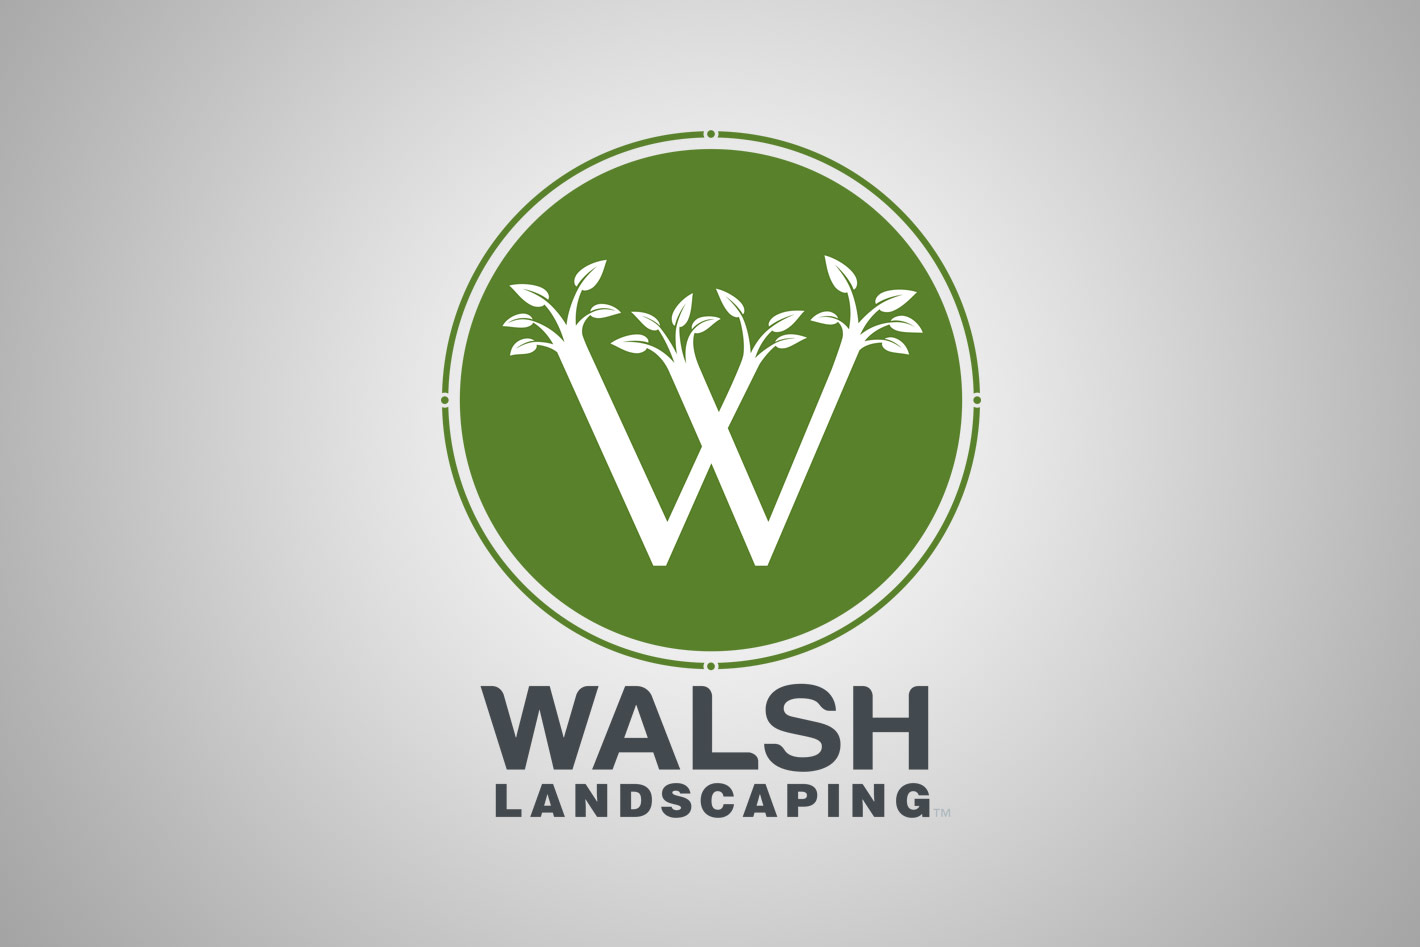 Walsh Landscaping logo